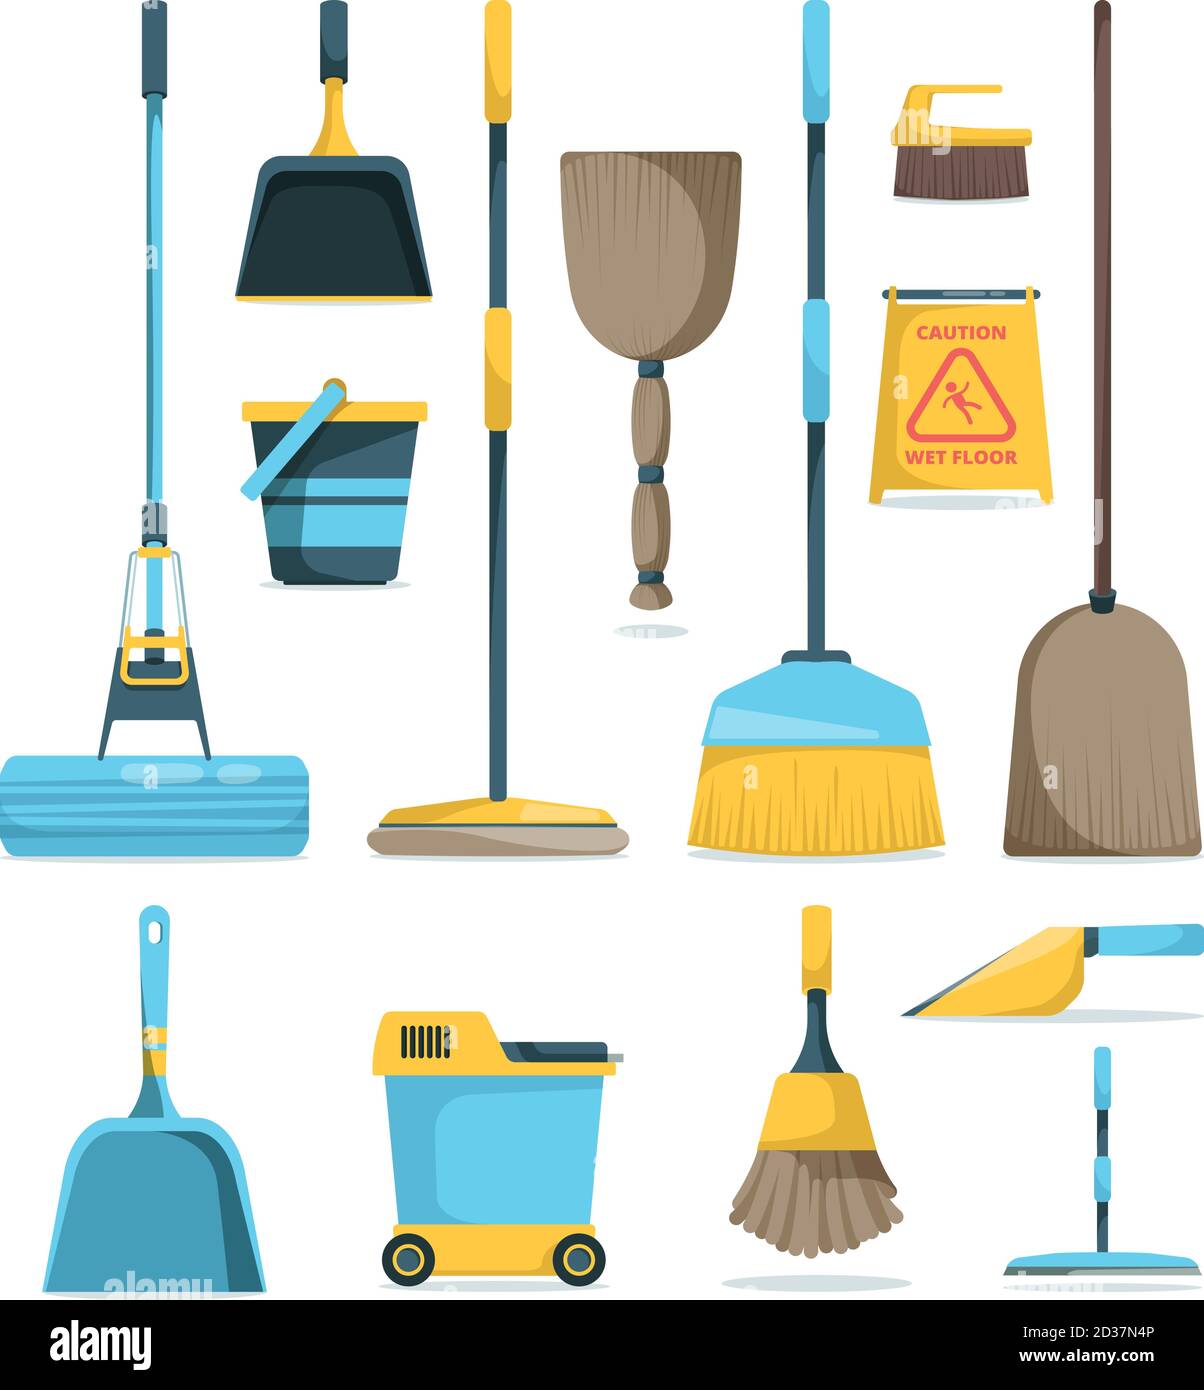 Besen und Mops. Hygiene Zimmer Hausarbeit Versorgung Haushaltsgeräte für die Reinigung Griff Besen Vektor Cartoon Bilder Stock Vektor